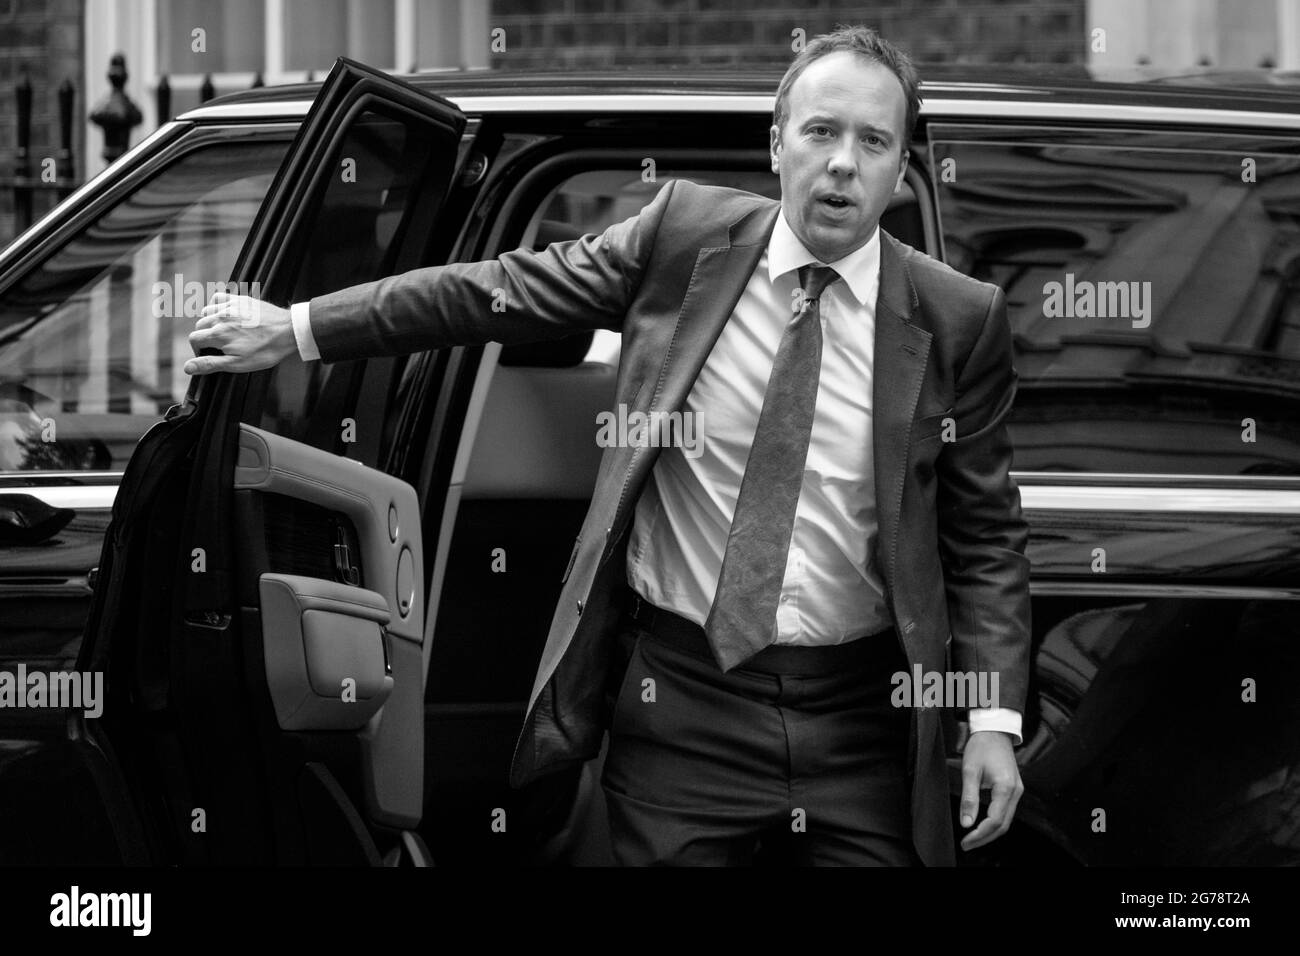 Matt Hancock, Politiker der britischen Konservativen Partei und Staatssekretär für Gesundheit, steigt in der Downing Street, London, aus dem Auto aus Stockfoto